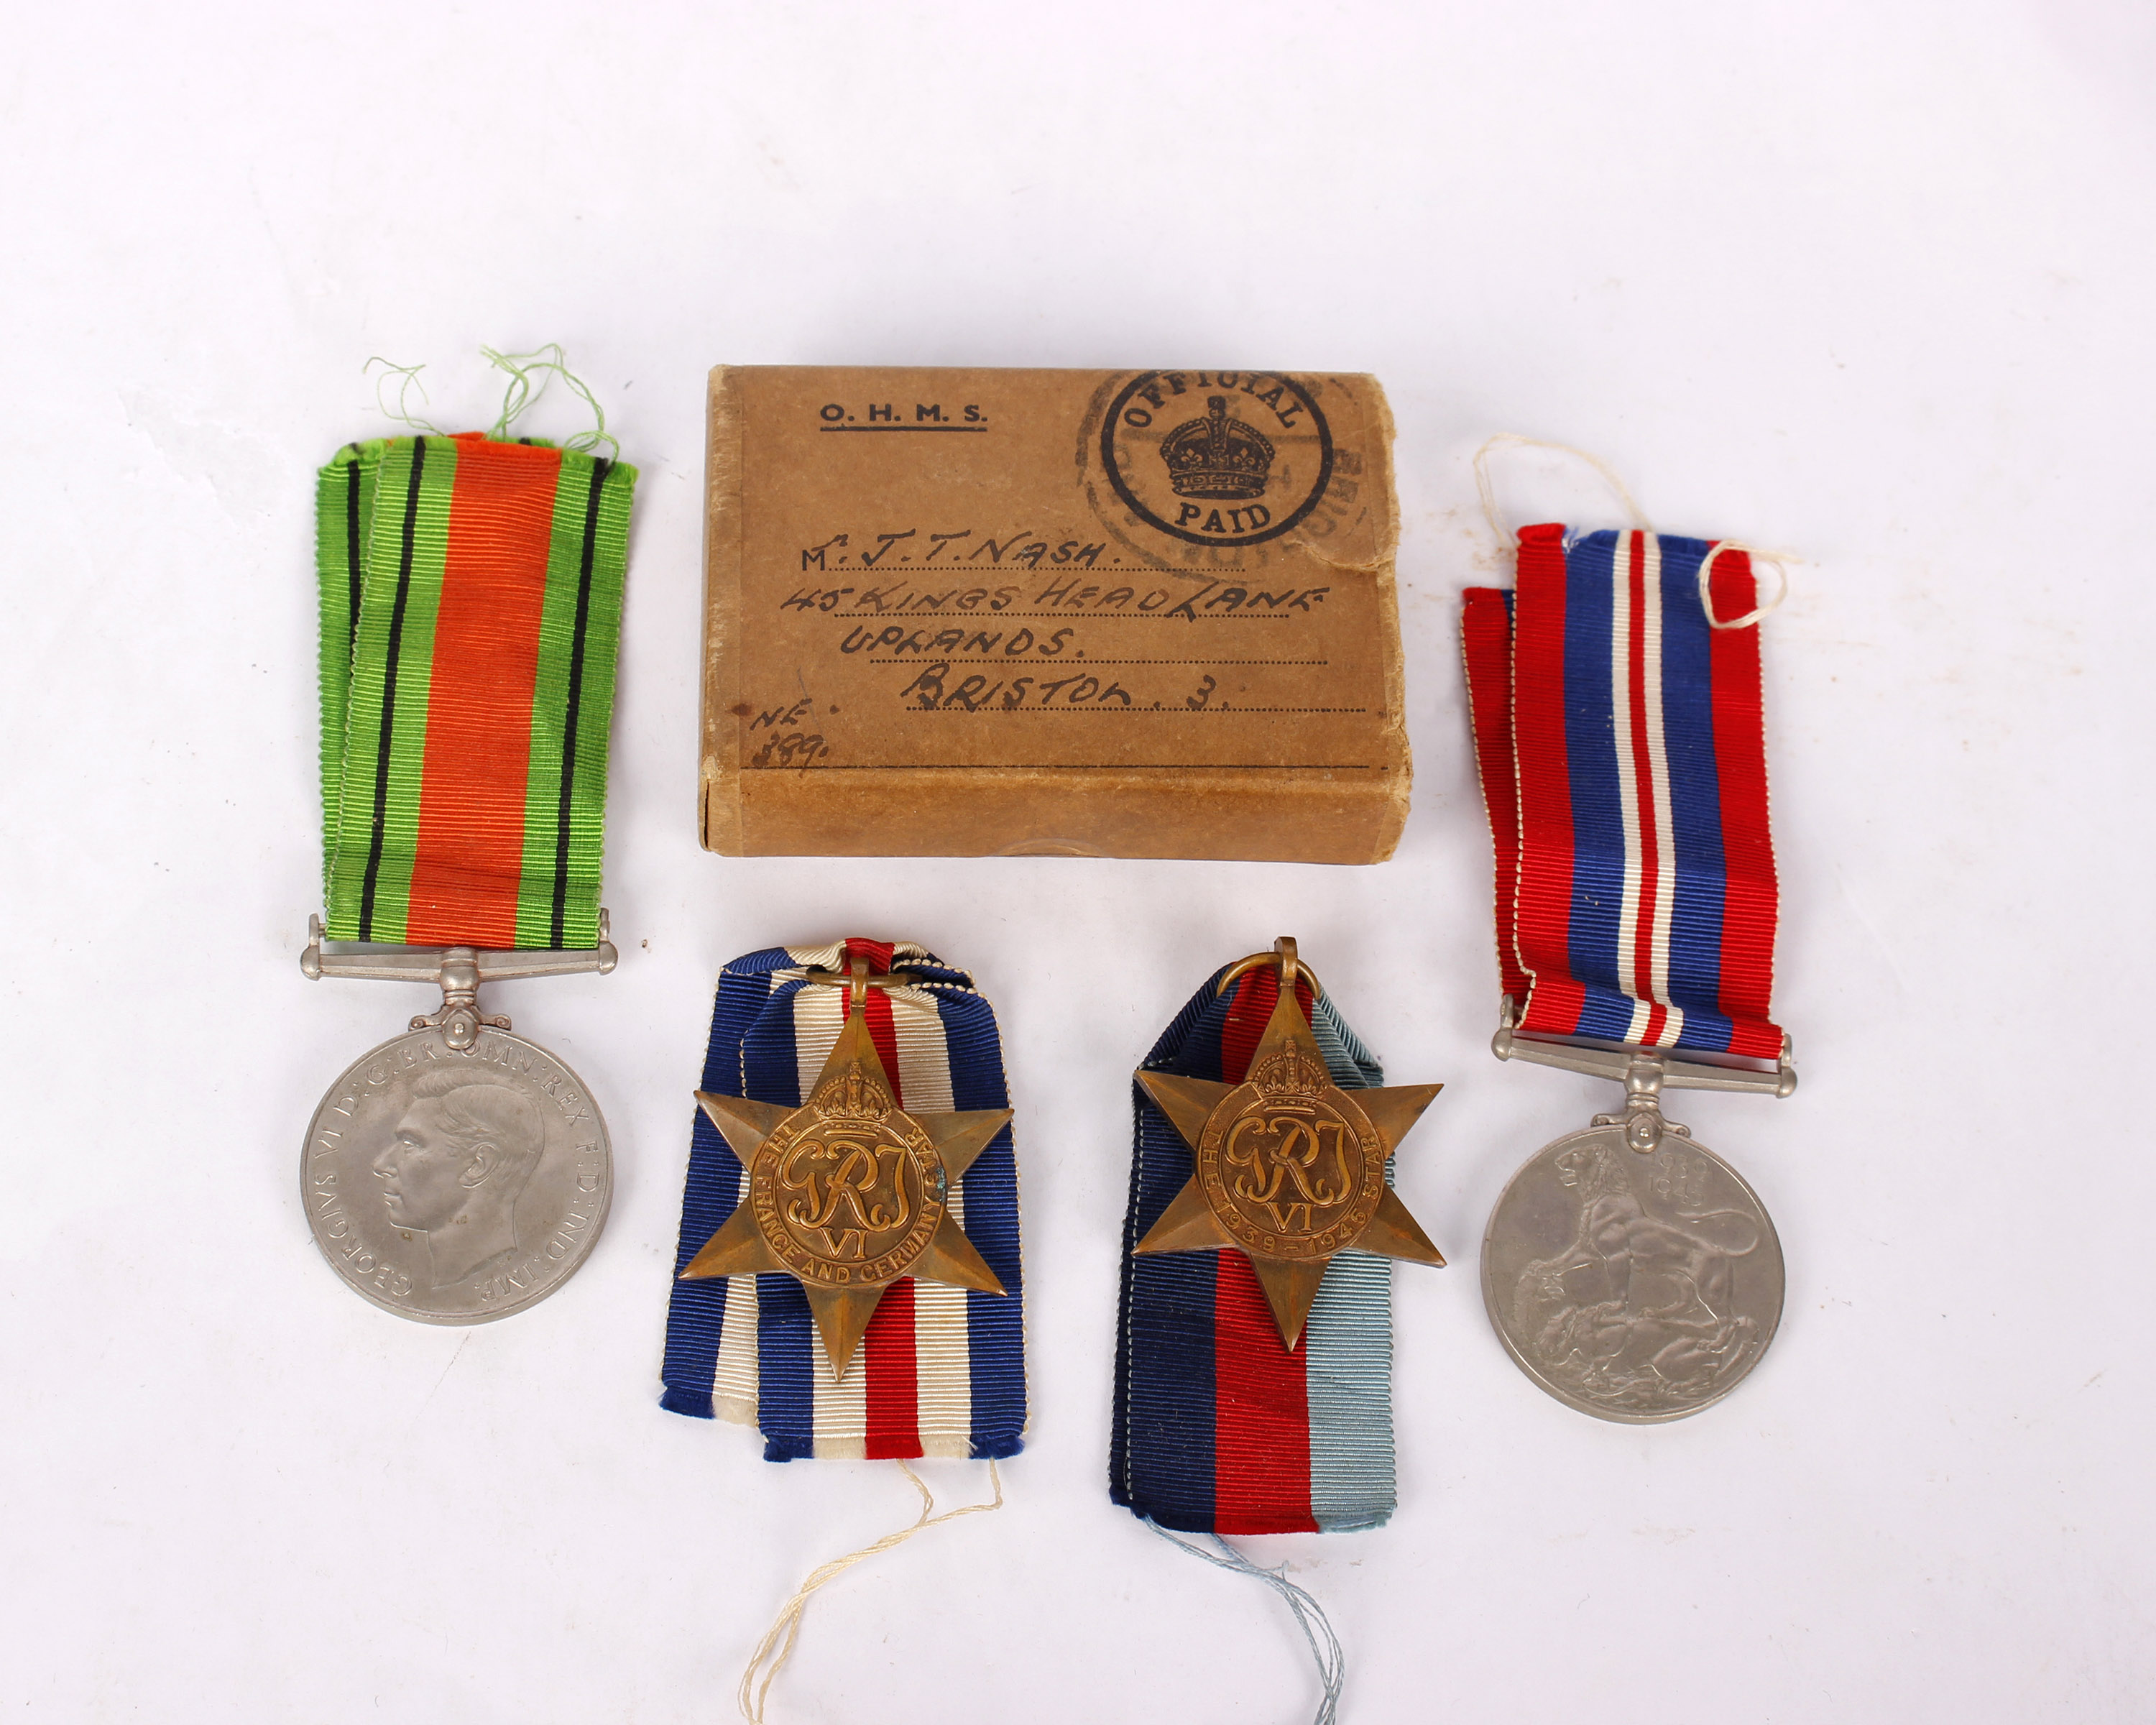 Four World War II medals.